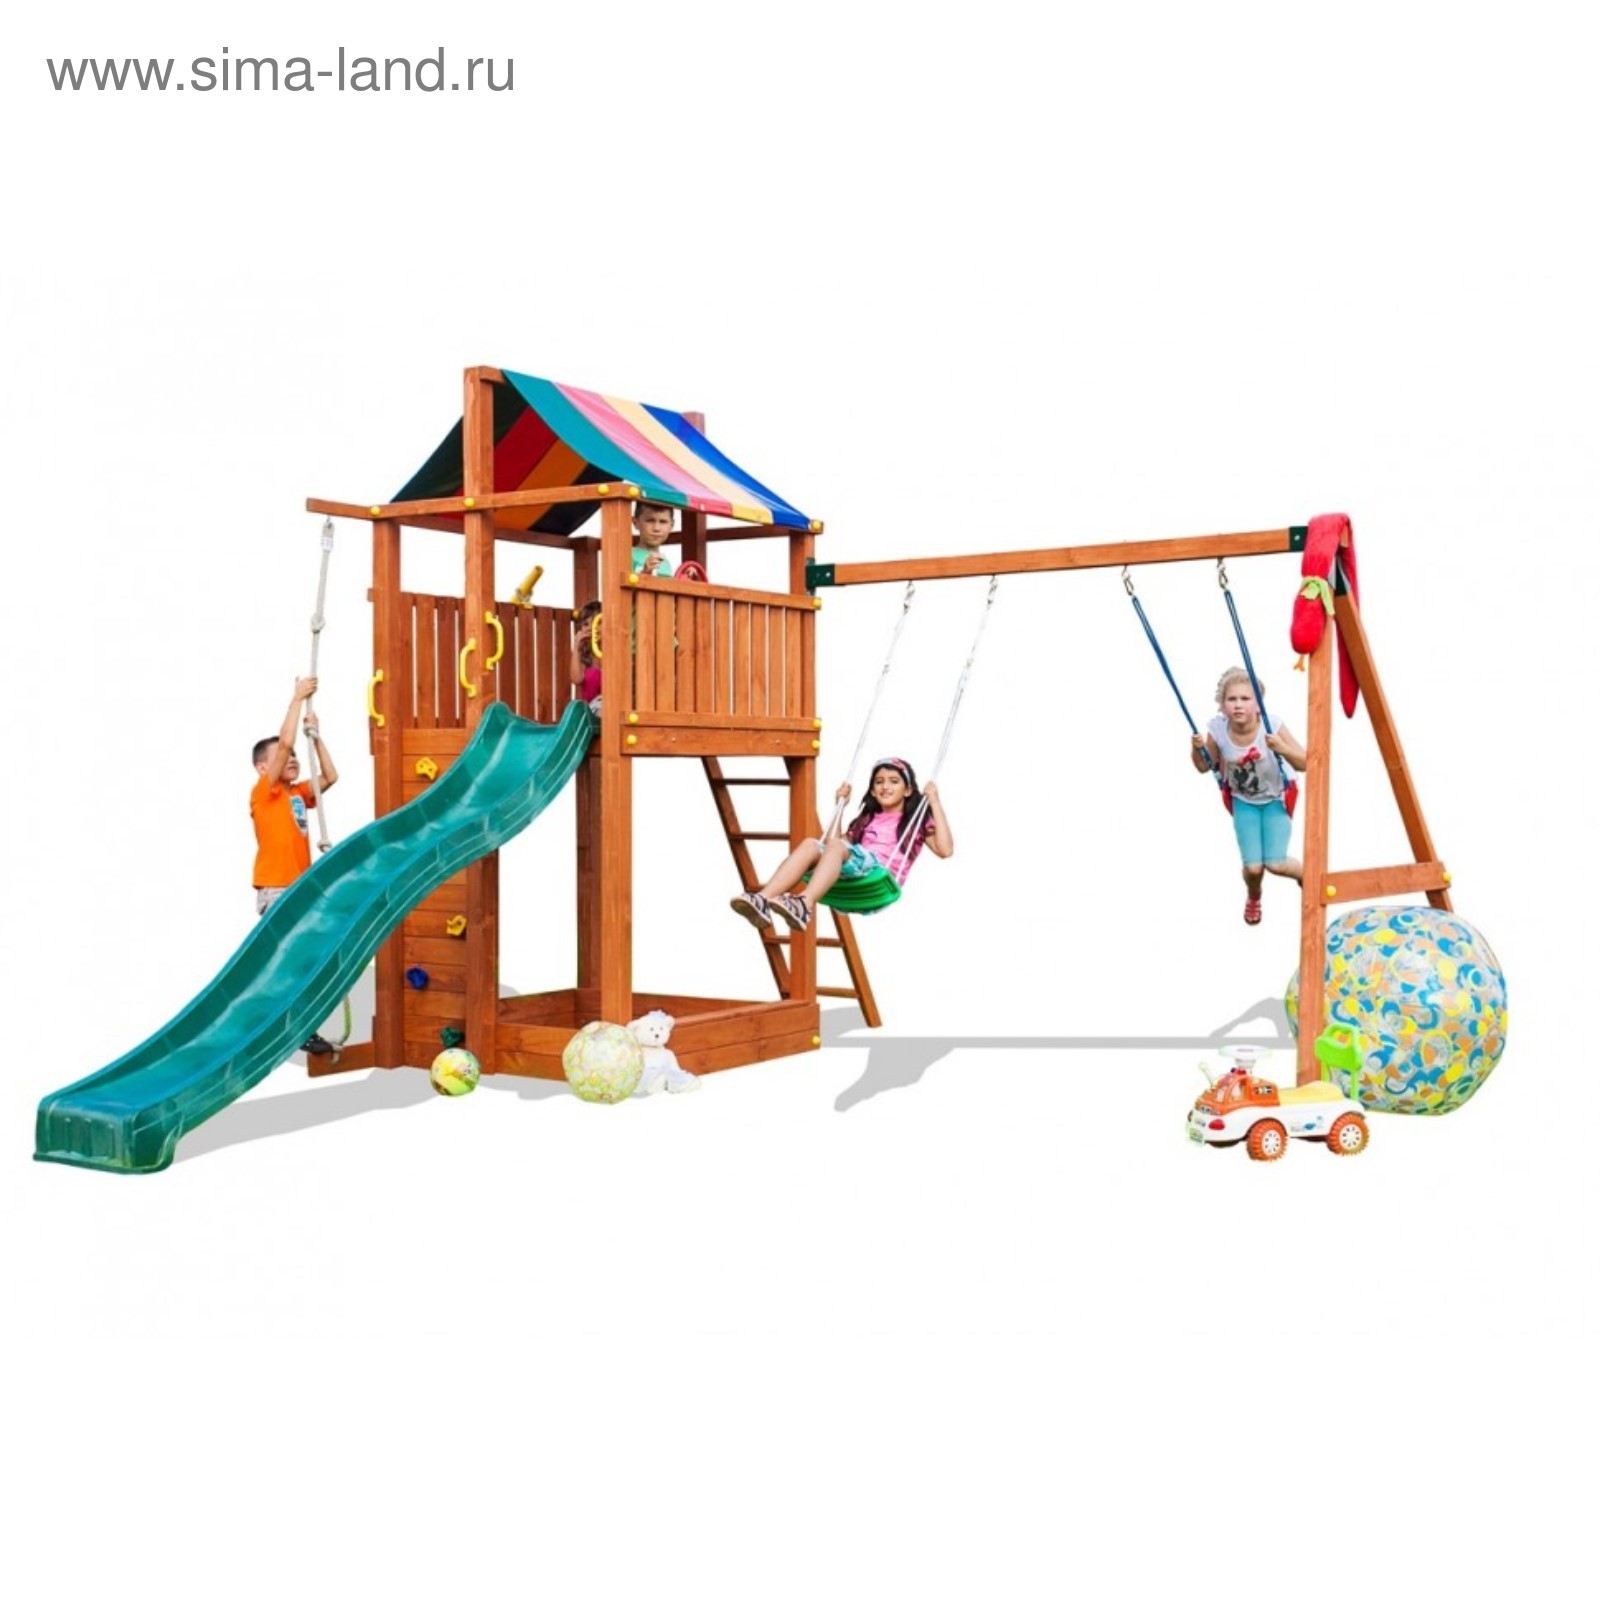 Игровой набор для детской площадки (домик с тентом, горка с лестницей,  песочница, канат, вере (3743410) - Купить по цене от 89 530.00 руб. |  Интернет магазин SIMA-LAND.RU